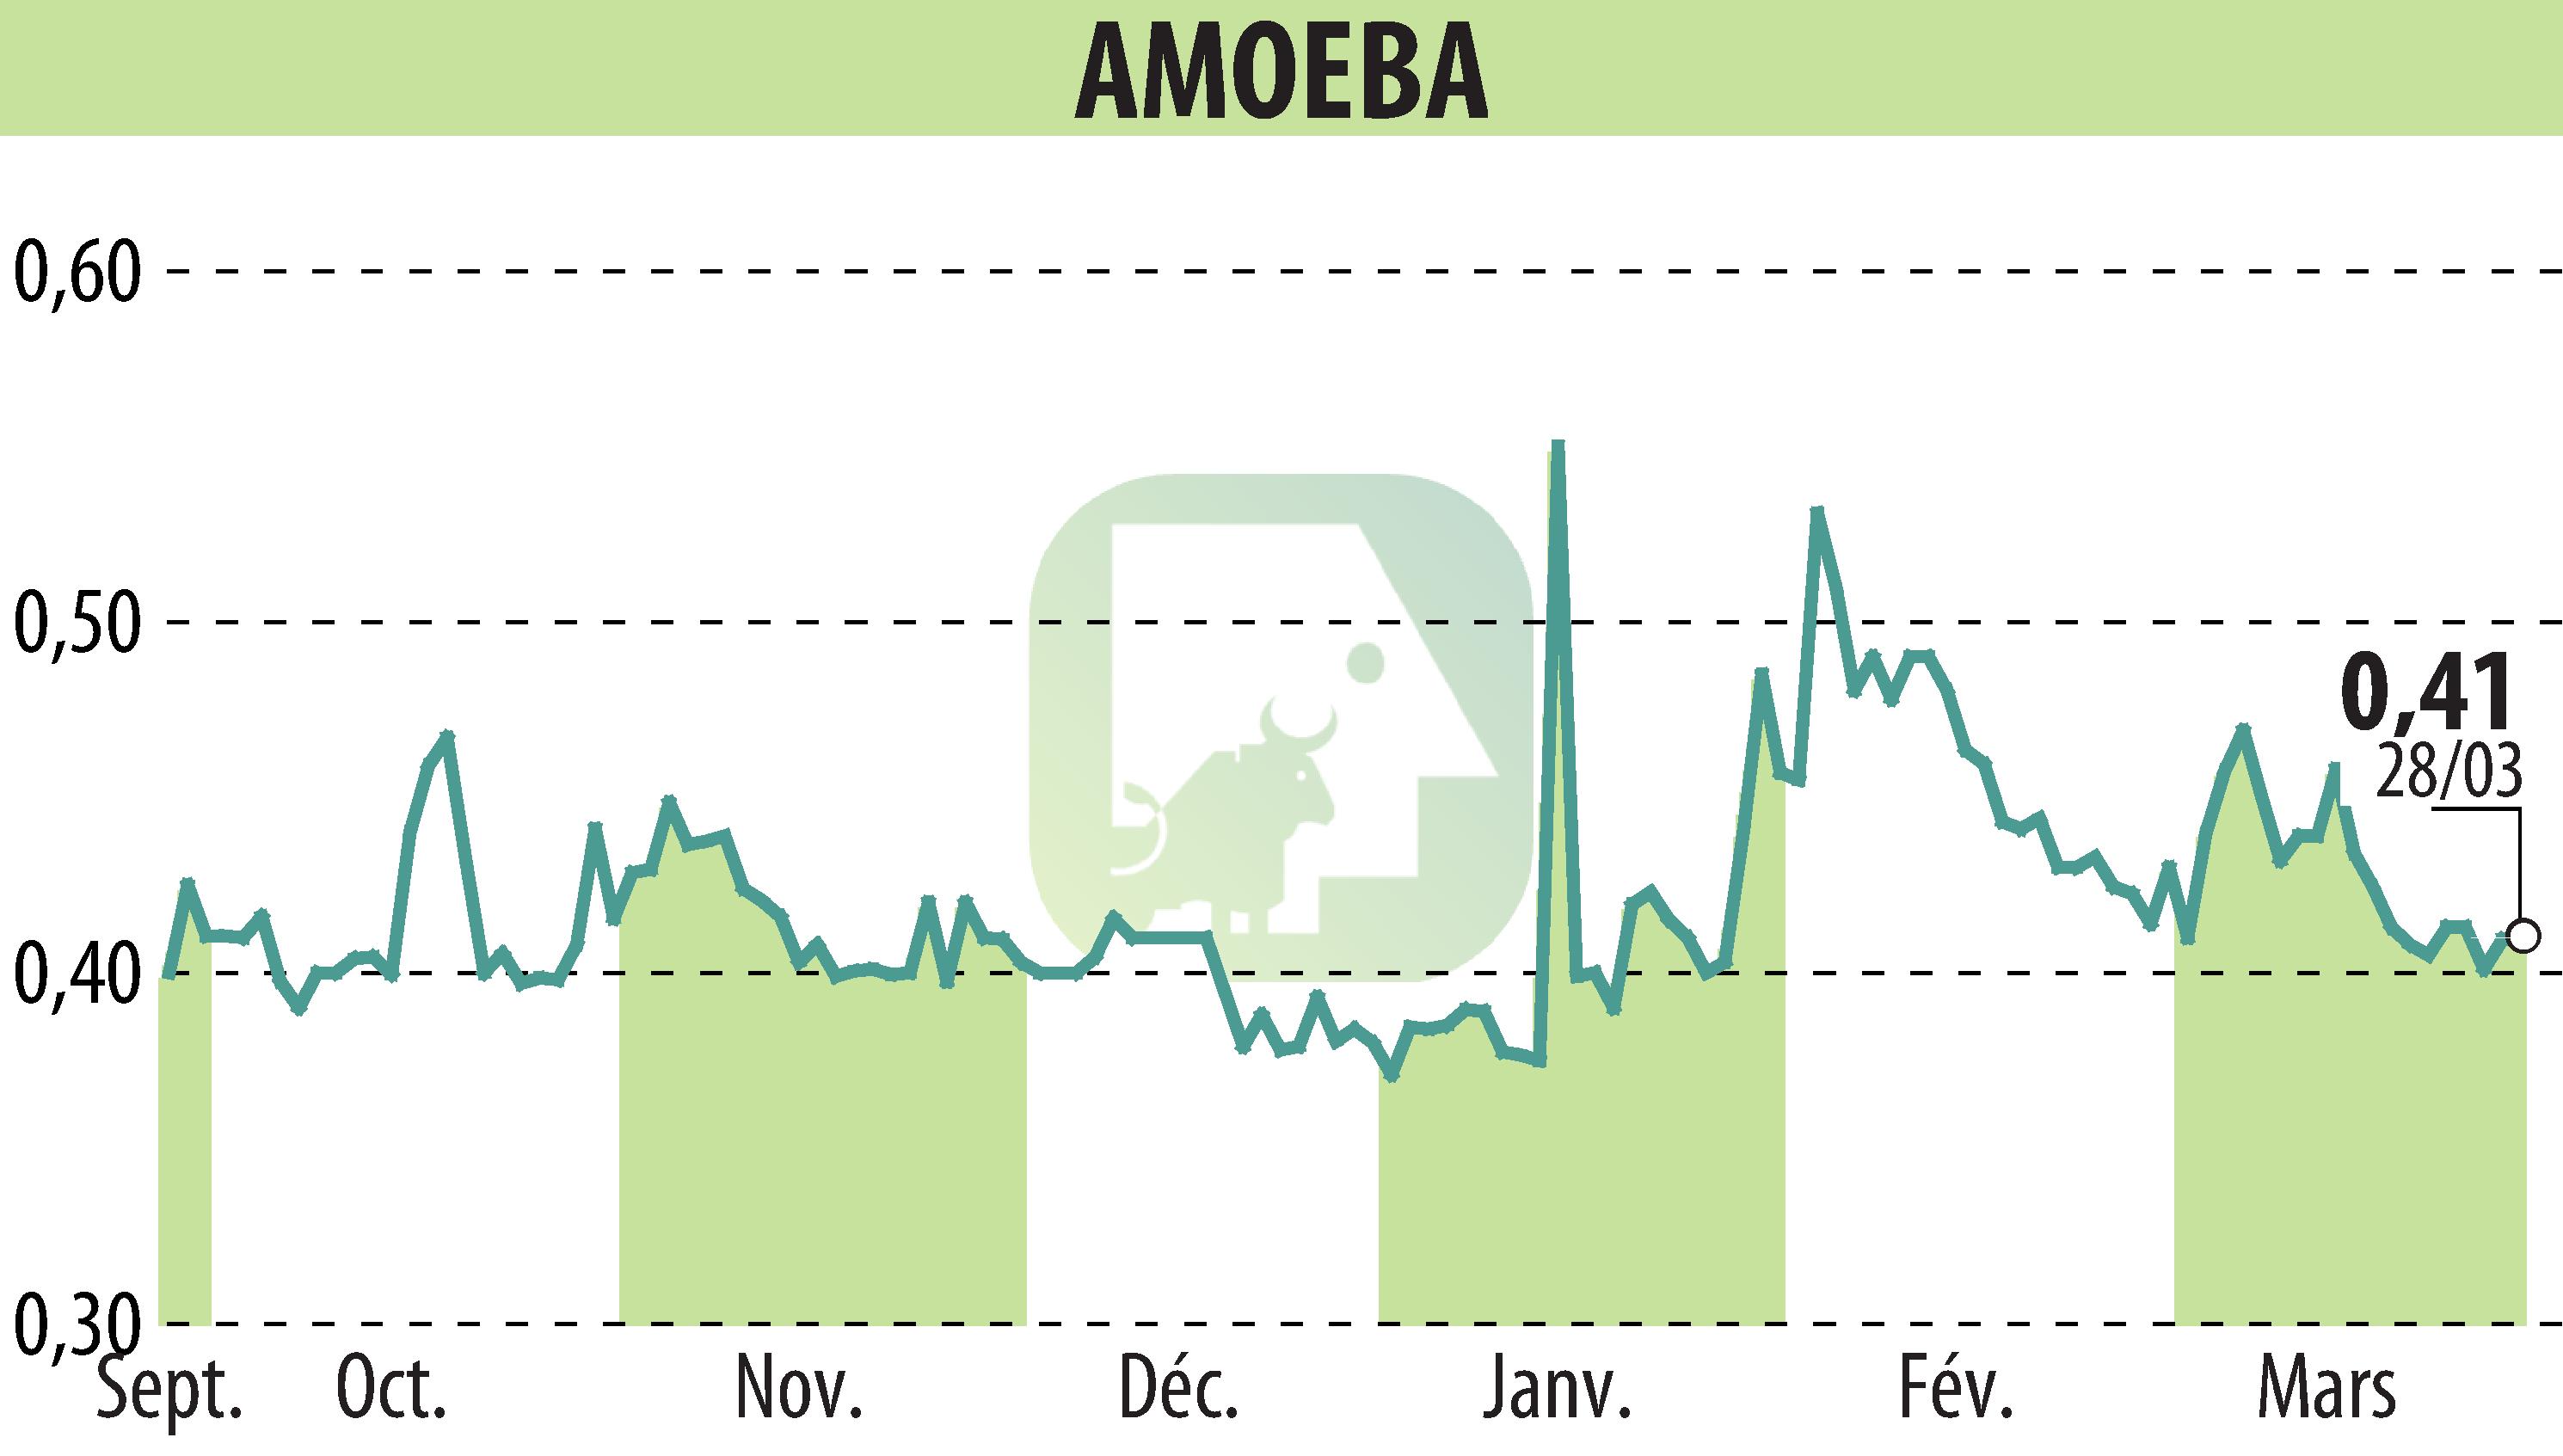 Stock price chart of AMOEBA (EPA:ALMIB) showing fluctuations.